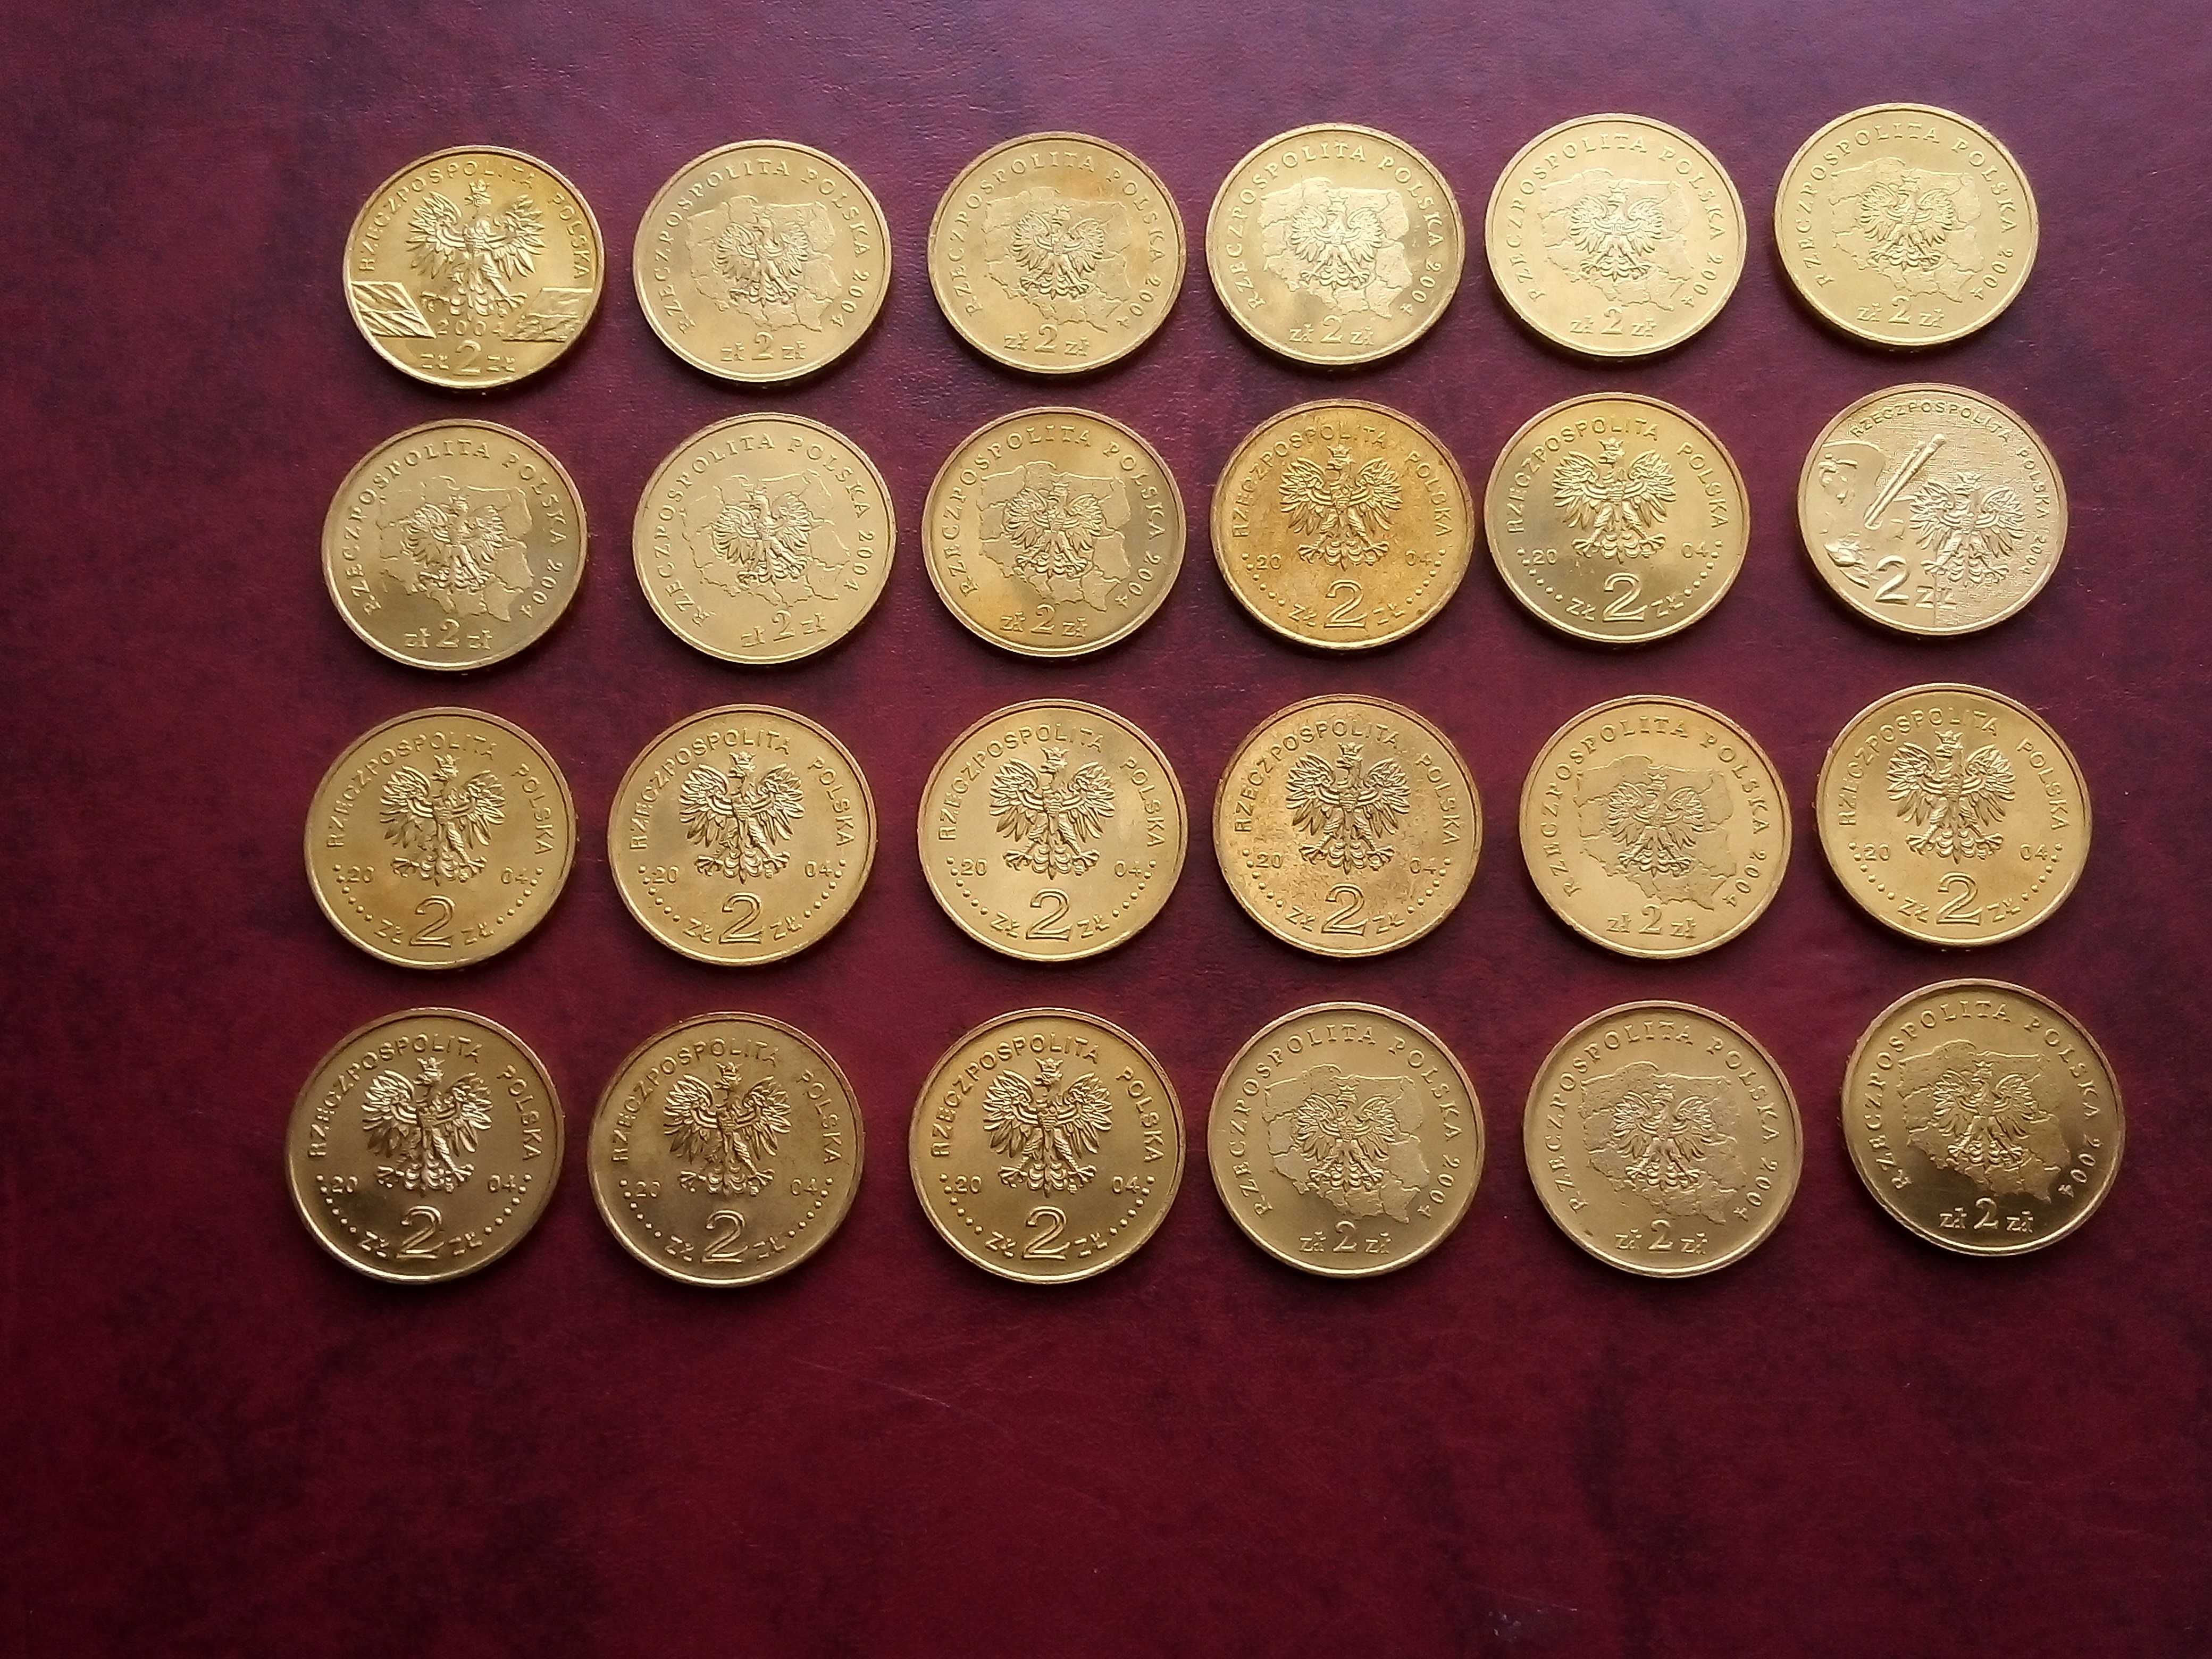 Monety 2 zł GN 2004r okolicznościowe-24szt (komplet,mennicze)